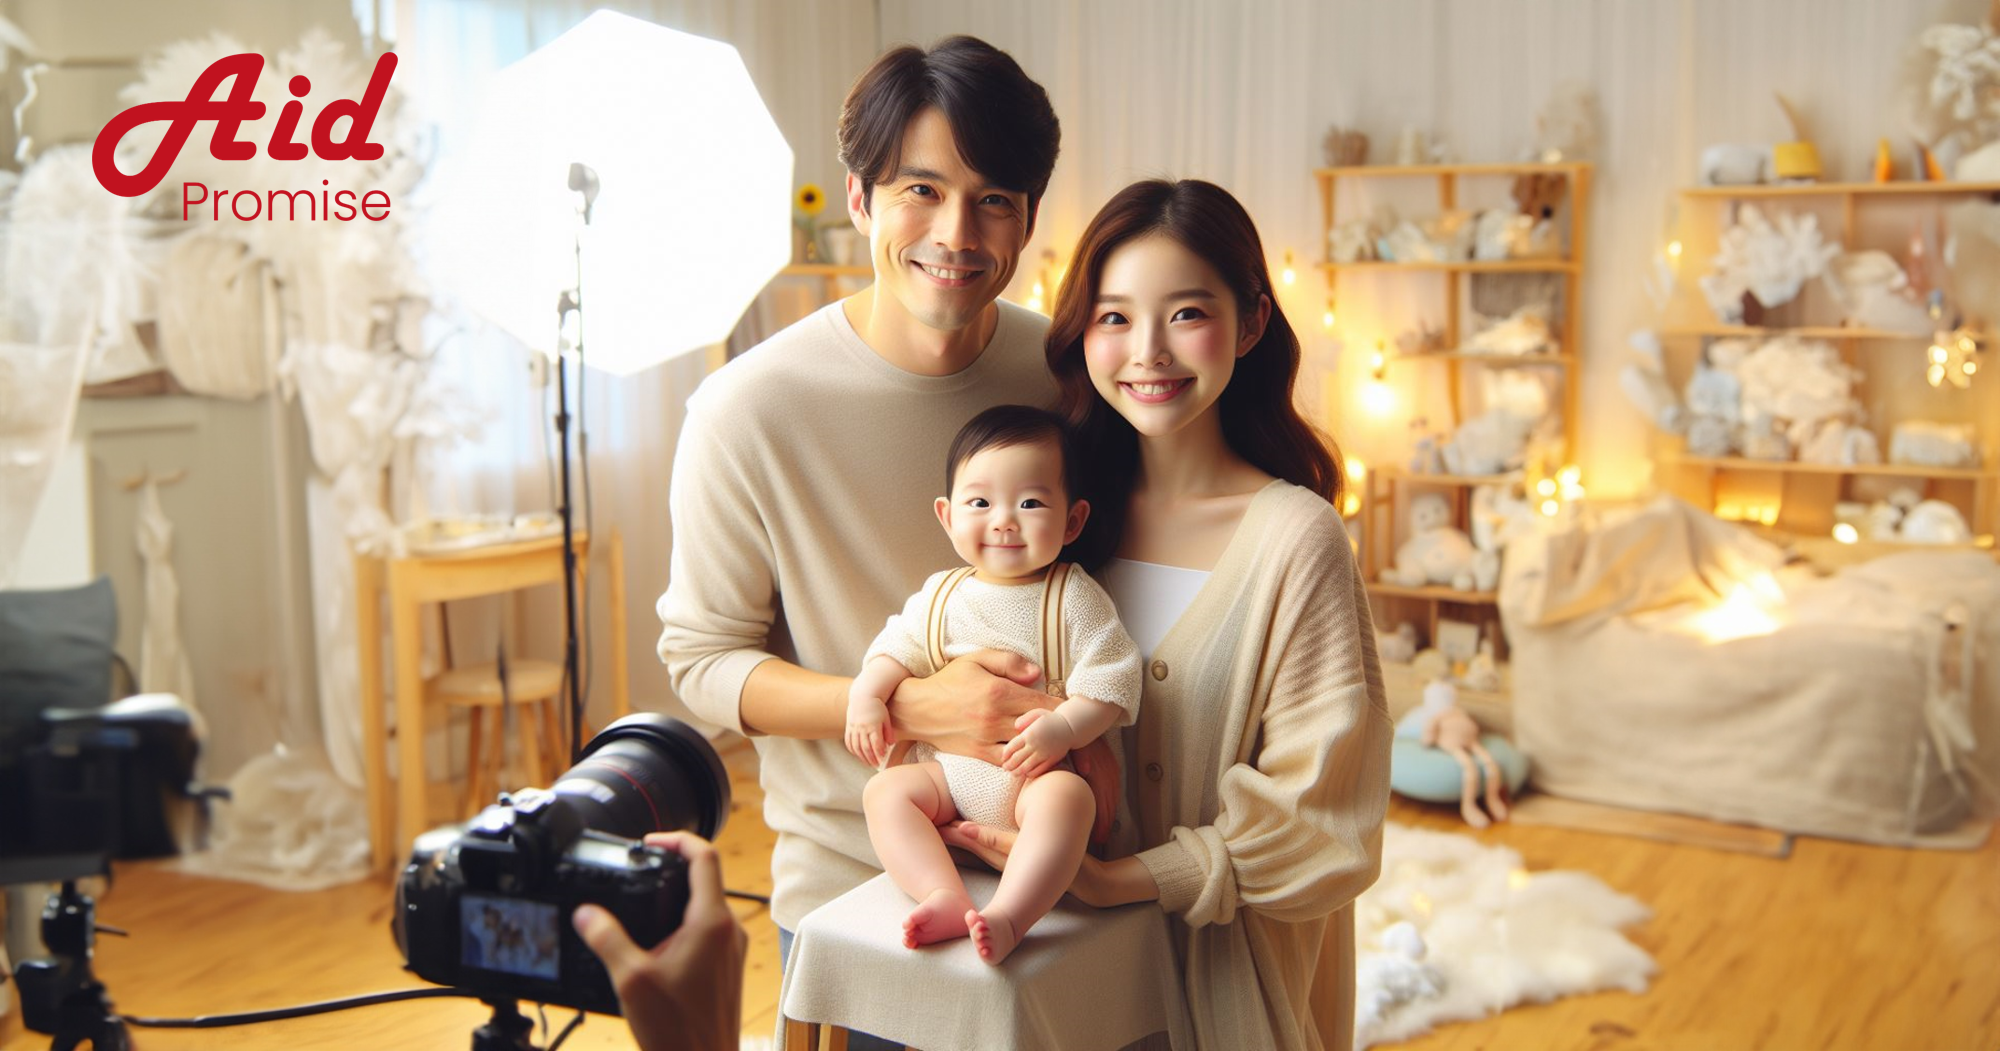 아기랑 가족 사진: 아이와 함께 사진을 찍는 간단한 5가지 방법